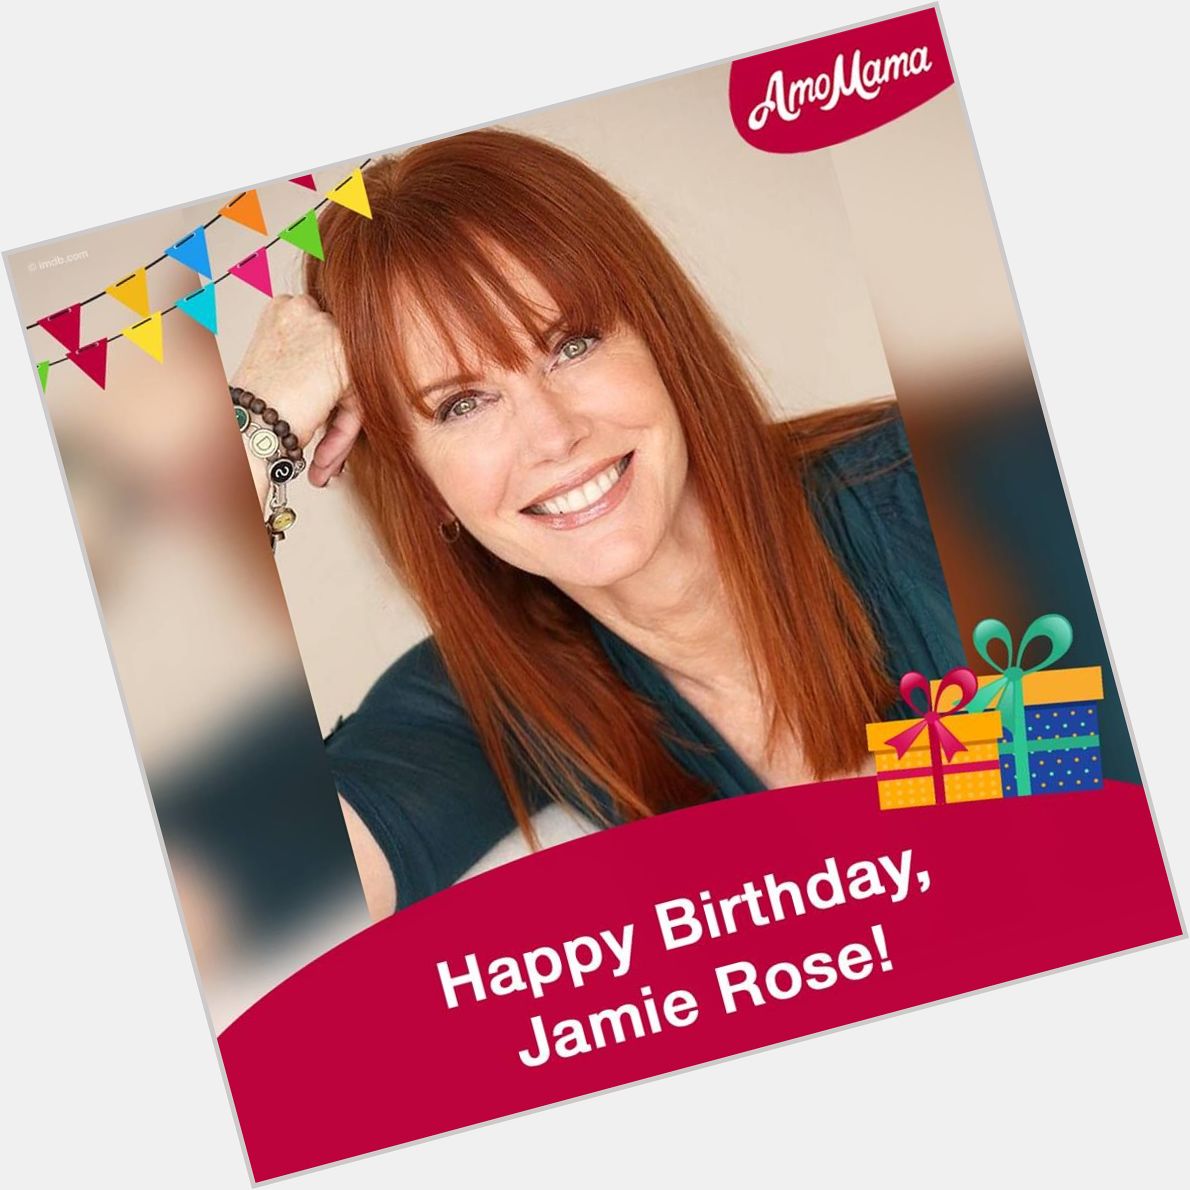  Happy Birthday, Jamie Rose! 